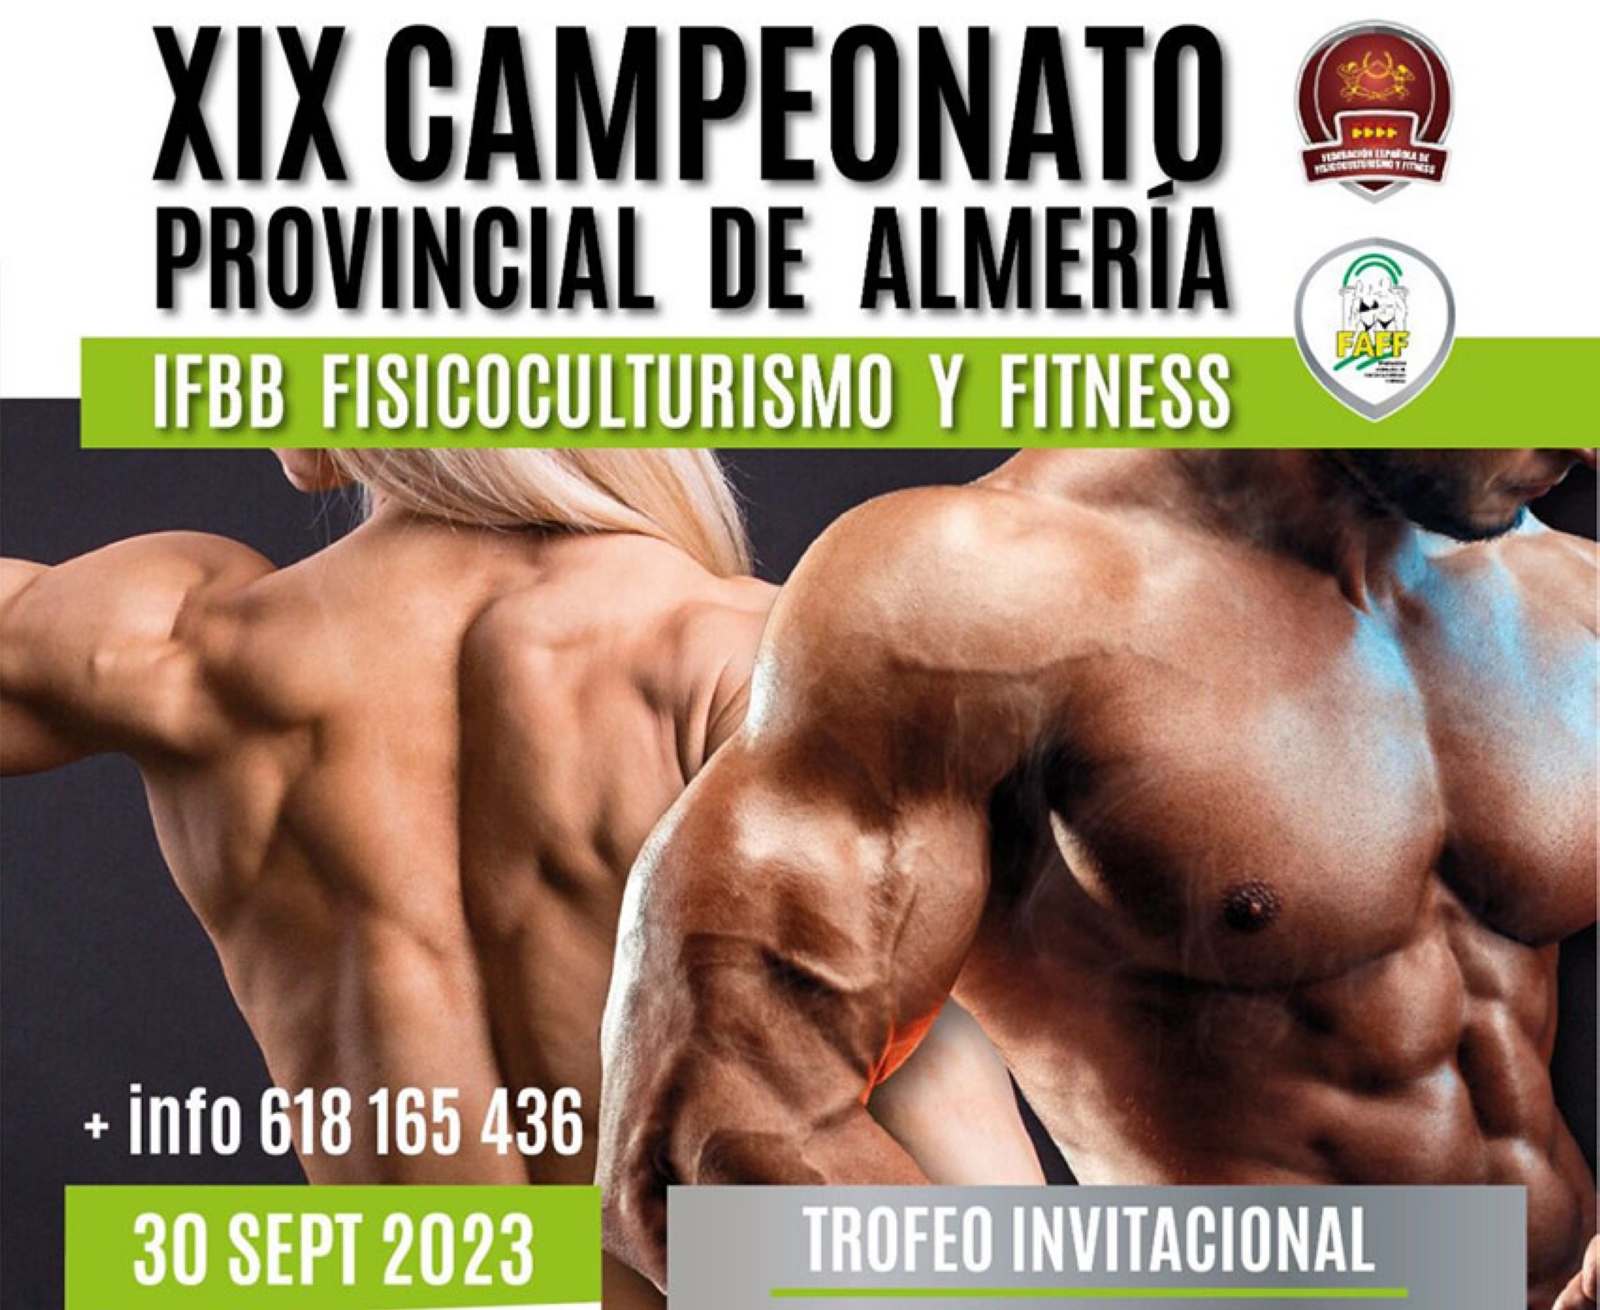 El XIX Campeonato Provincial de Almeria 2023